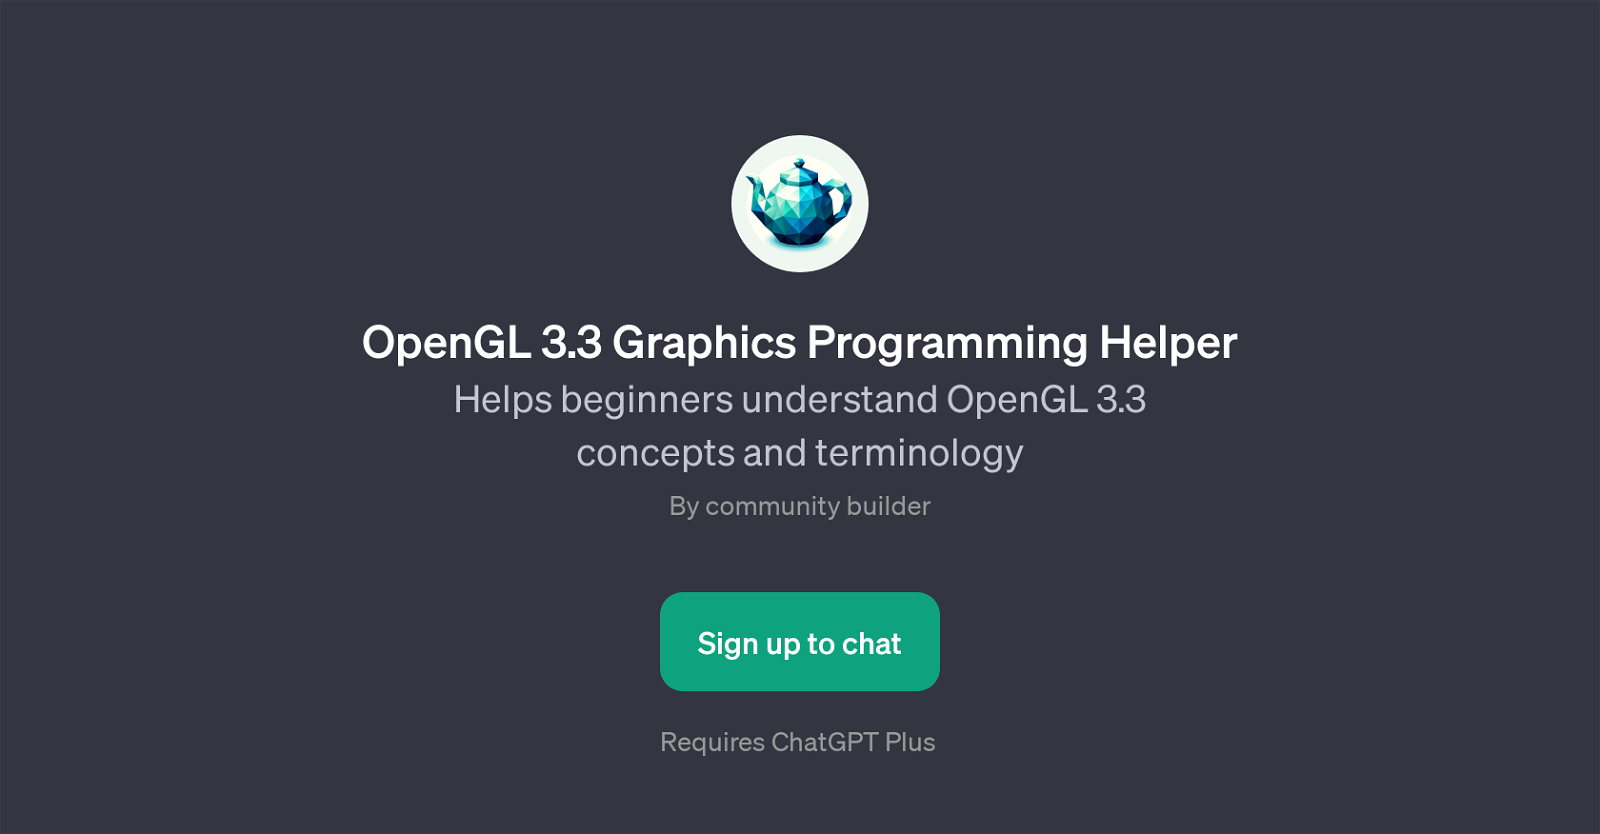 OpenGL 3.3 Graphics Programming Helper website